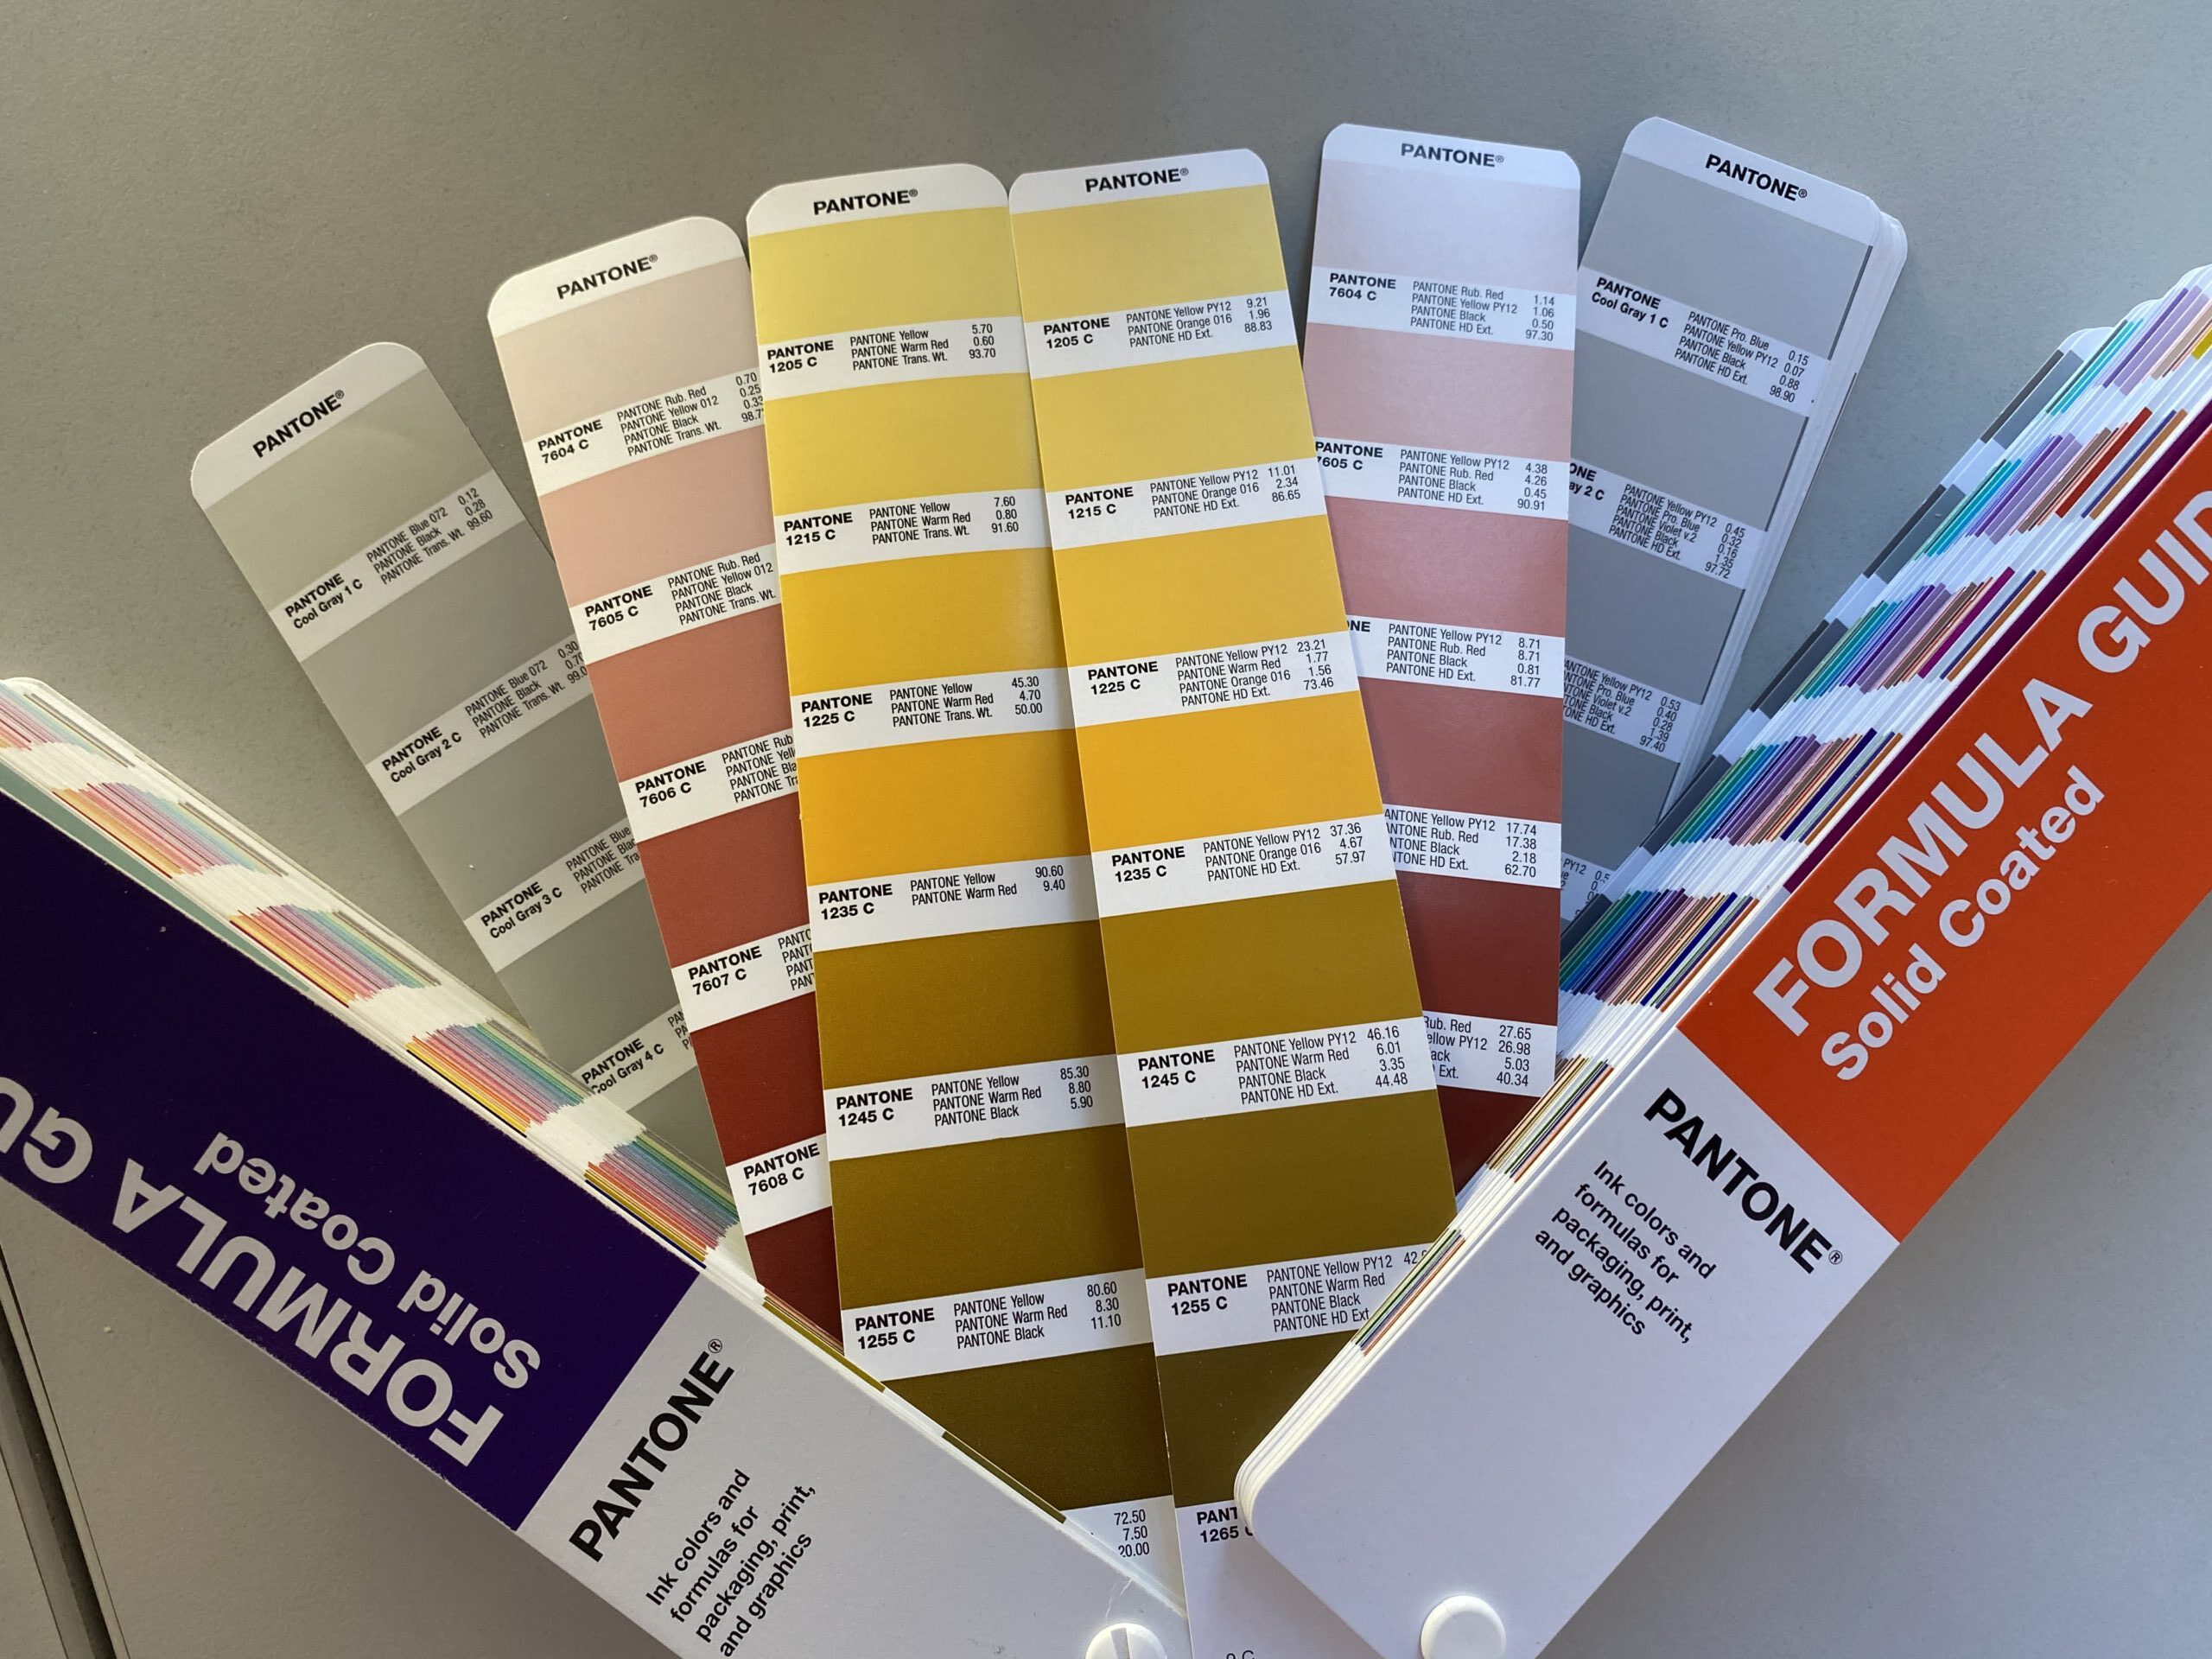 Varasema PANTONE Solid Coated fänni võrdlus 2023. aasta versiooniga näitab erinevusi koostises. Kõik PANTONE'i värviformulatsioonid on muutunud, kusjuures GRAY värvitoonid ühendavad kuni 5 värvi ühes formulatsioonis.